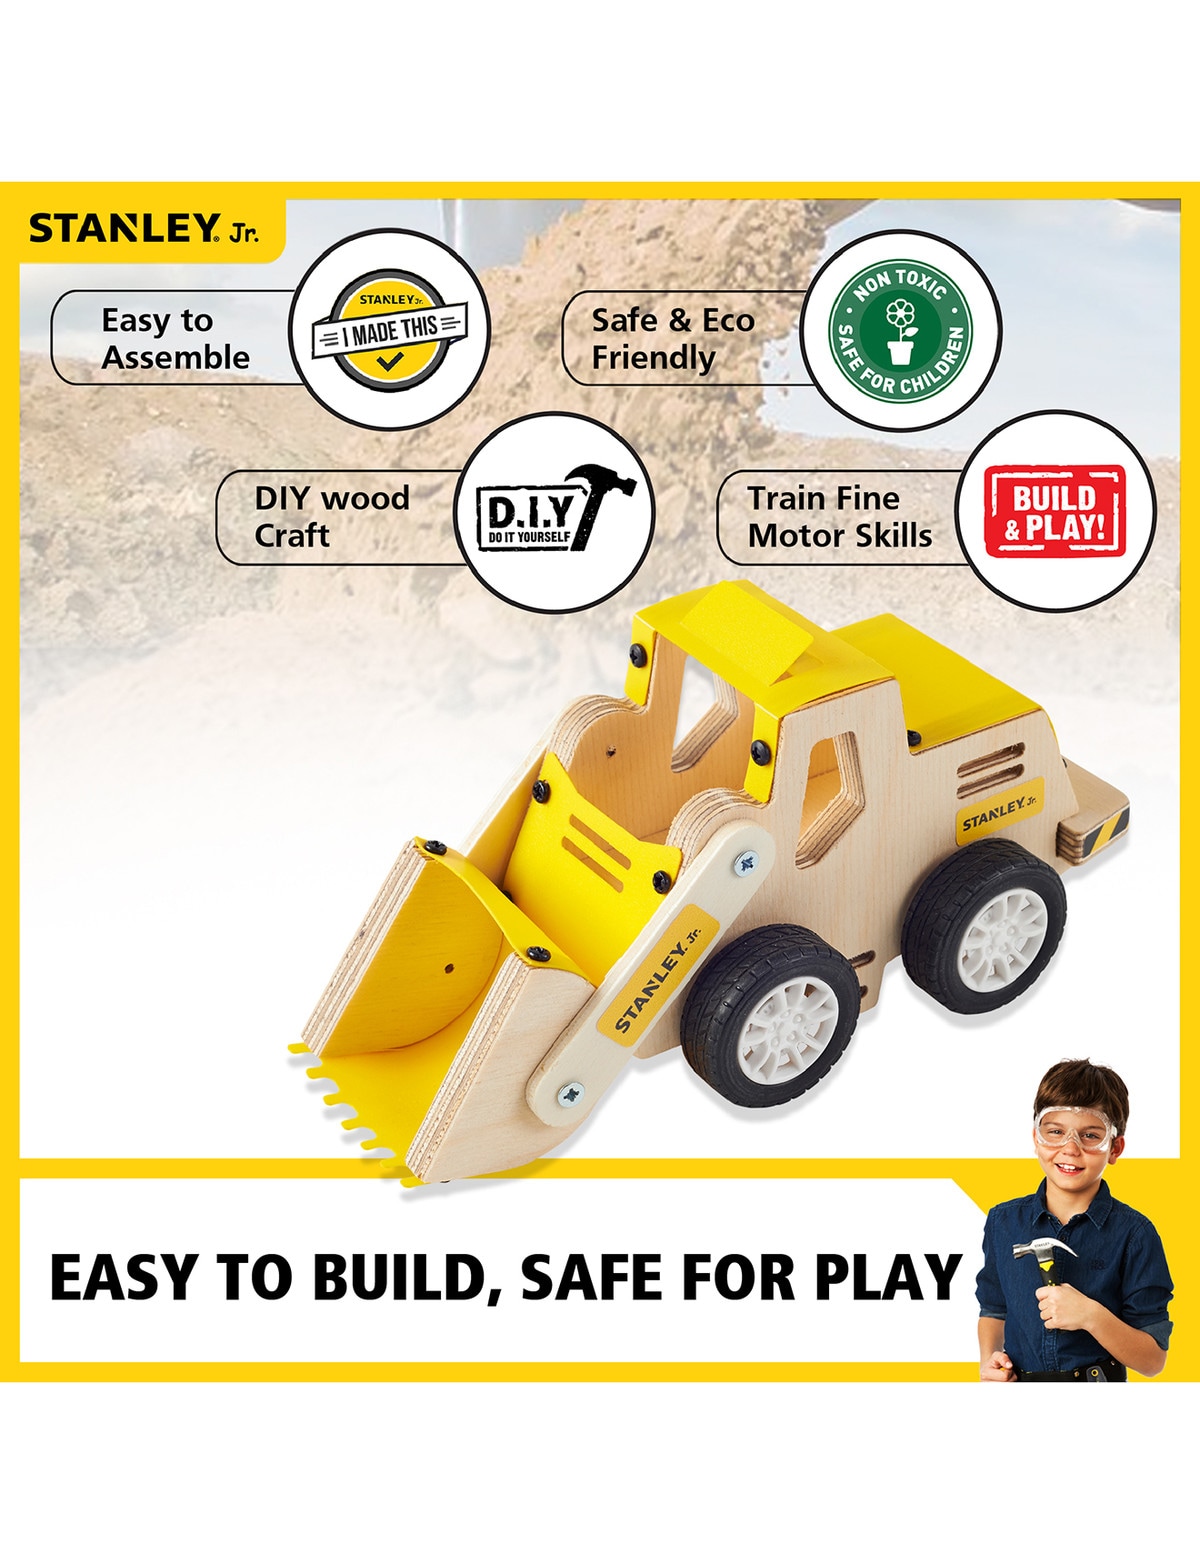 Stanley Jr. Front Loader Kit & 7 Piece Tool Set | Real Tools for Kids